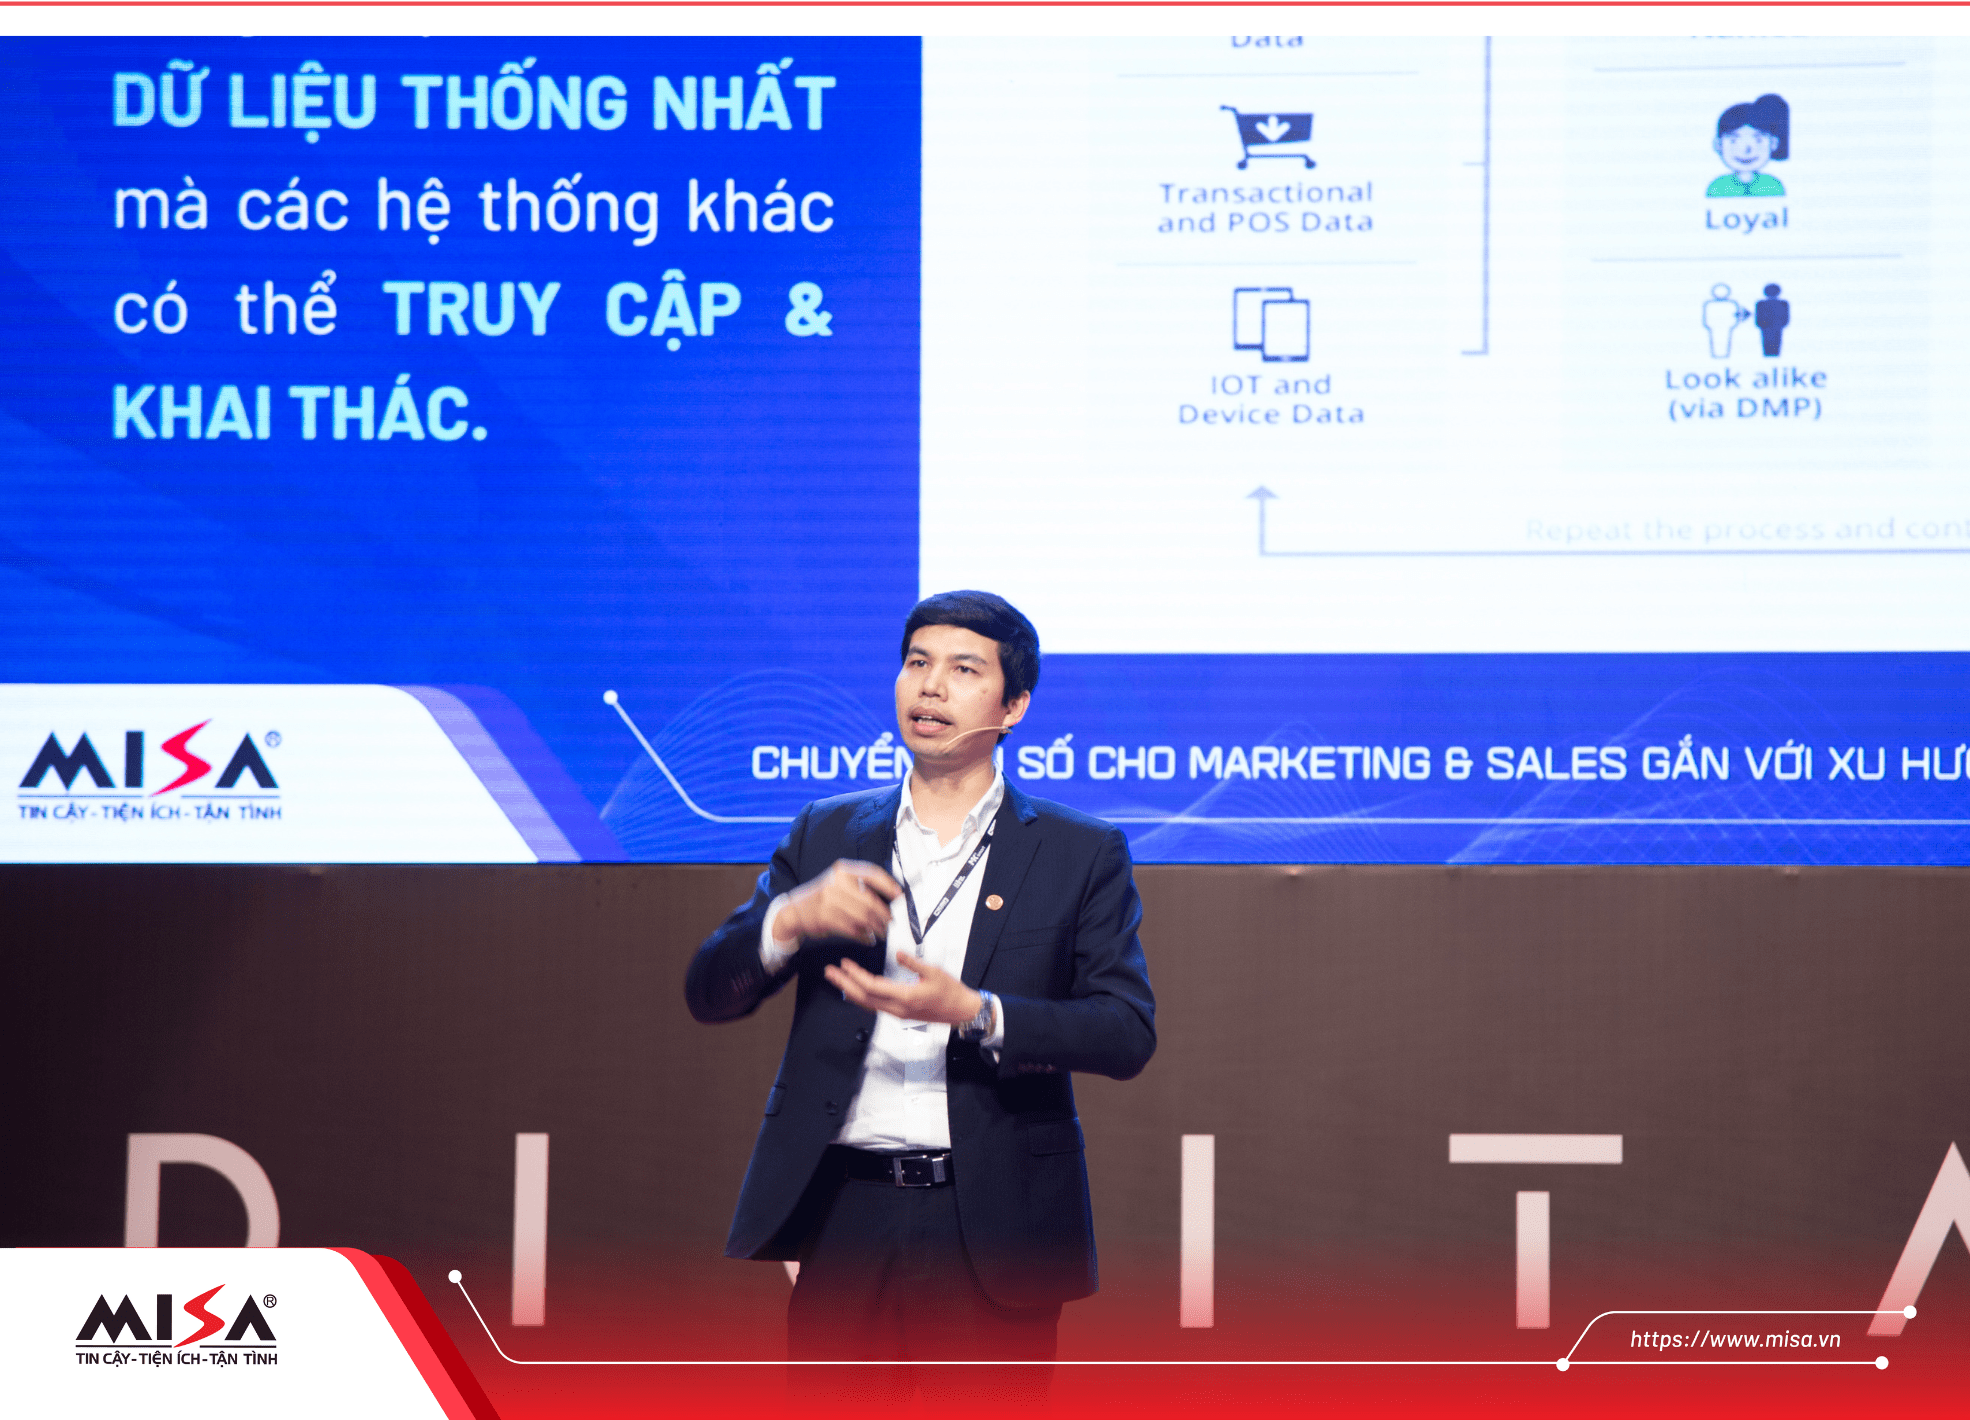 Theo ông Lê Hồng Quang, CDP hiện đã trở thành một xu hướng và các doanh nghiệp, kể cả doanh nghiệp SME đều nên quan tâm